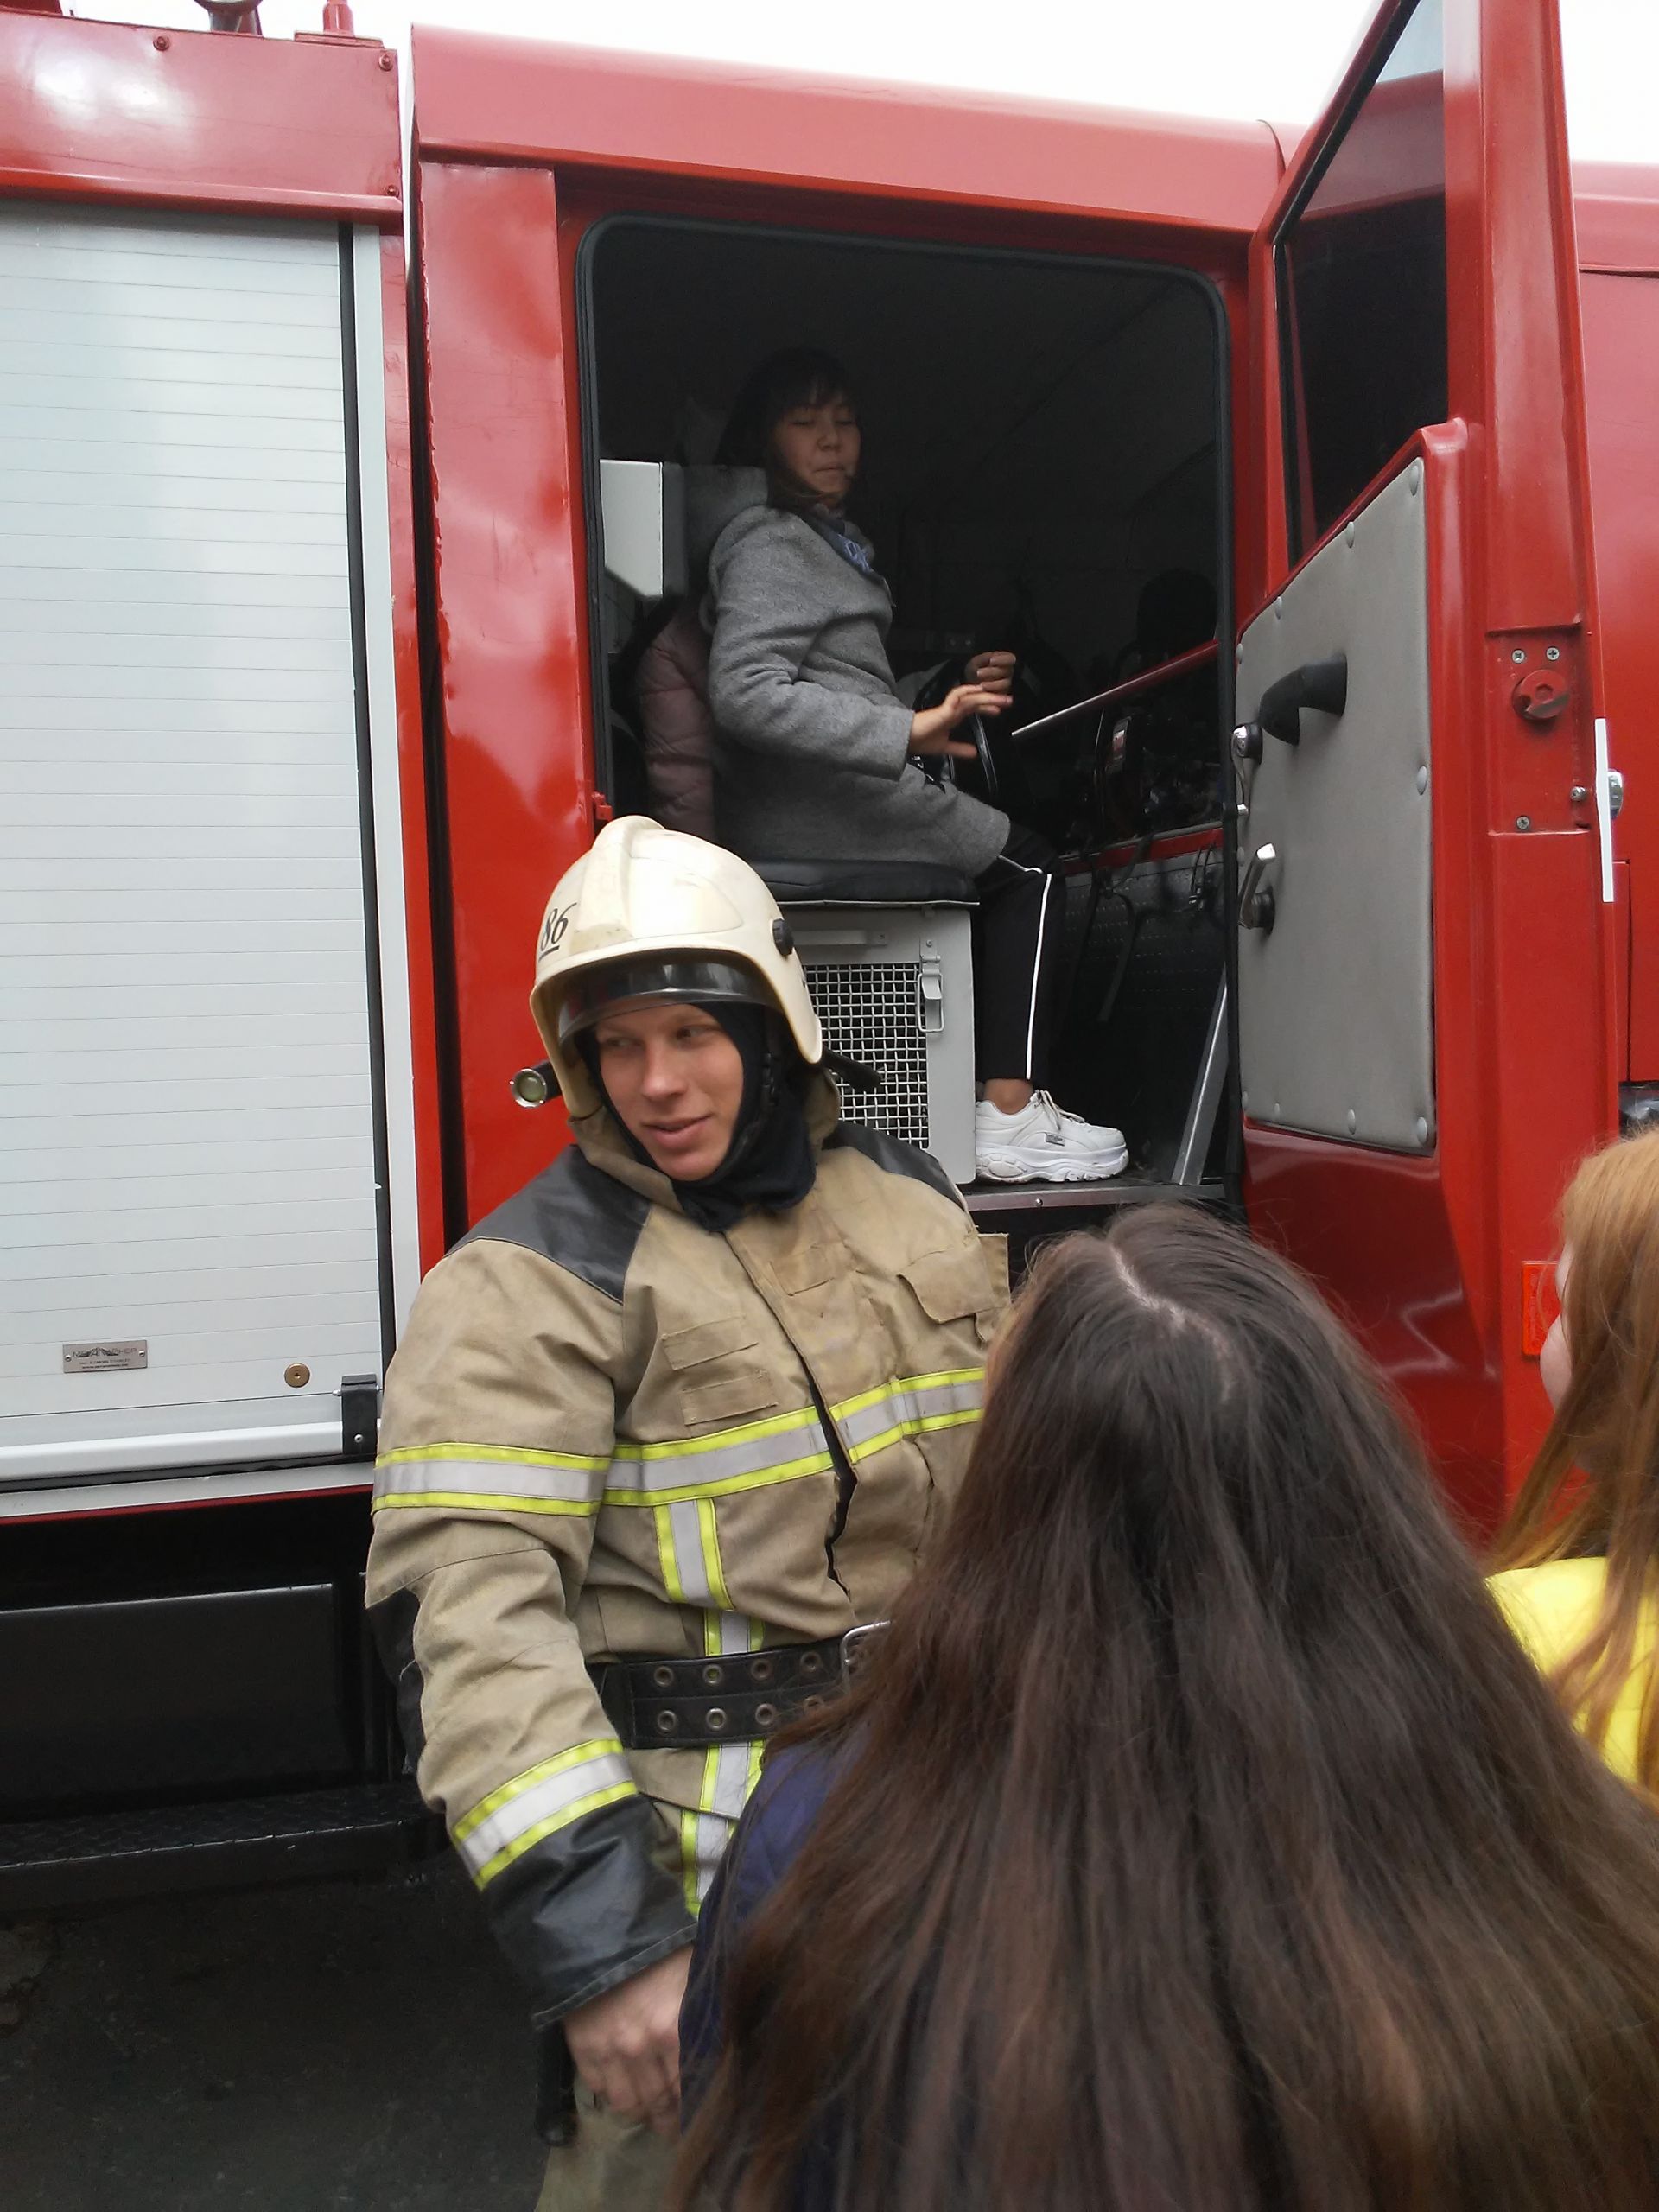 Учащиеся седьмой школы побывали с экскурсией в пожарно-спасательной части № 86